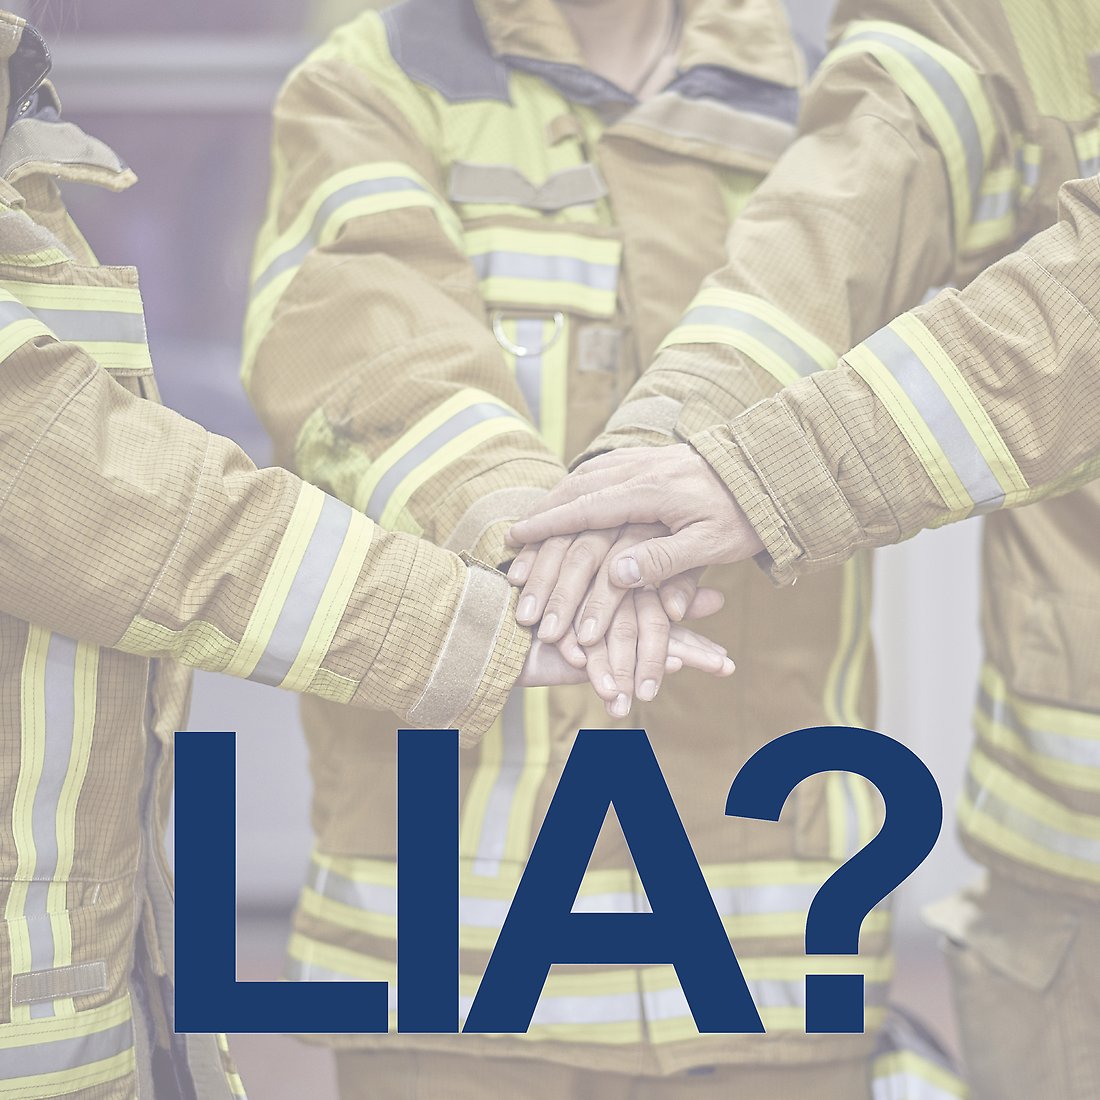 Bild på tre brandmän. Bildtexten är "LIA?".